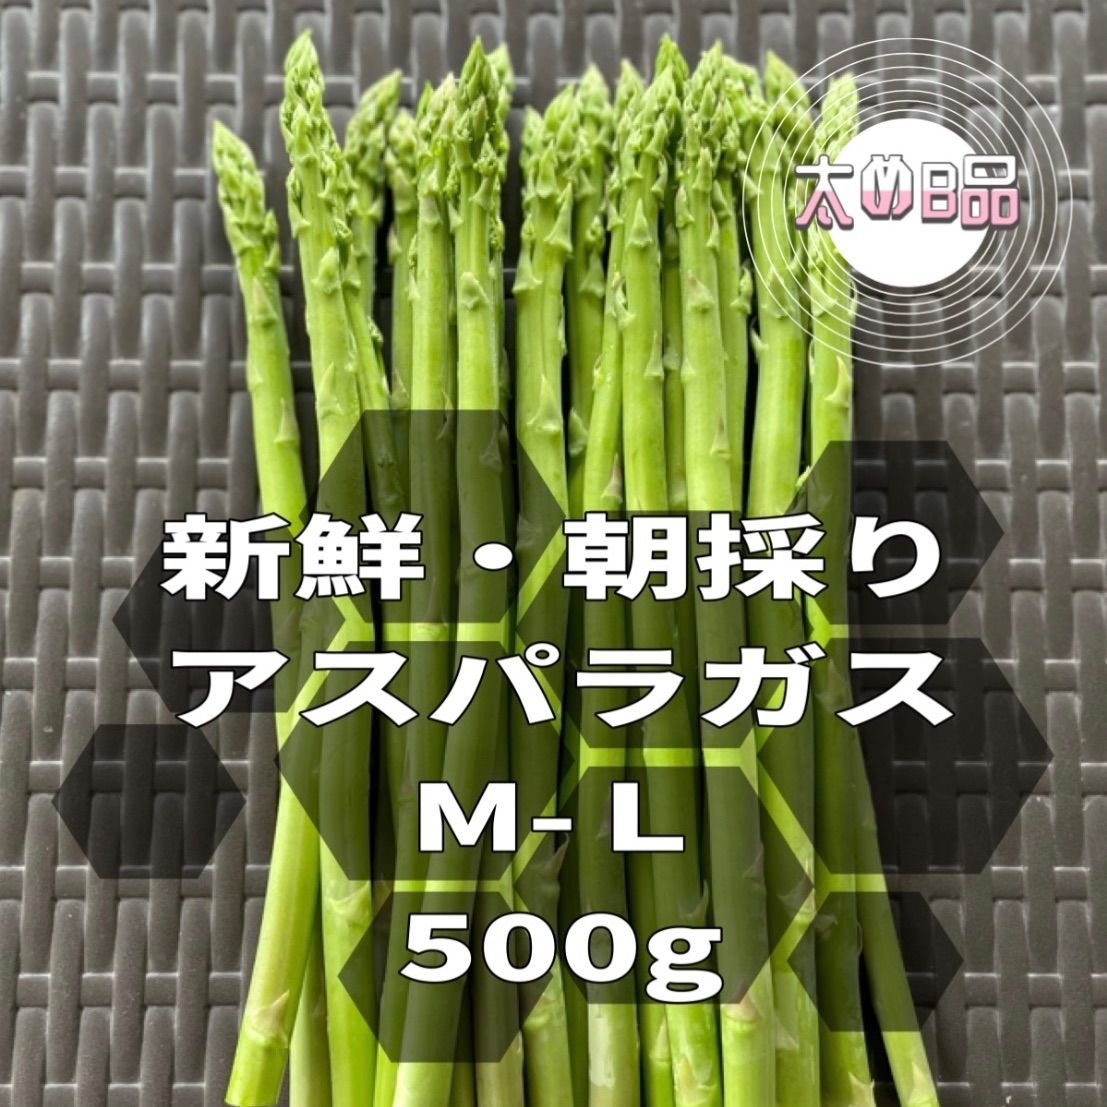 M、L混合 グリーンアスパラガス 500g - 野菜